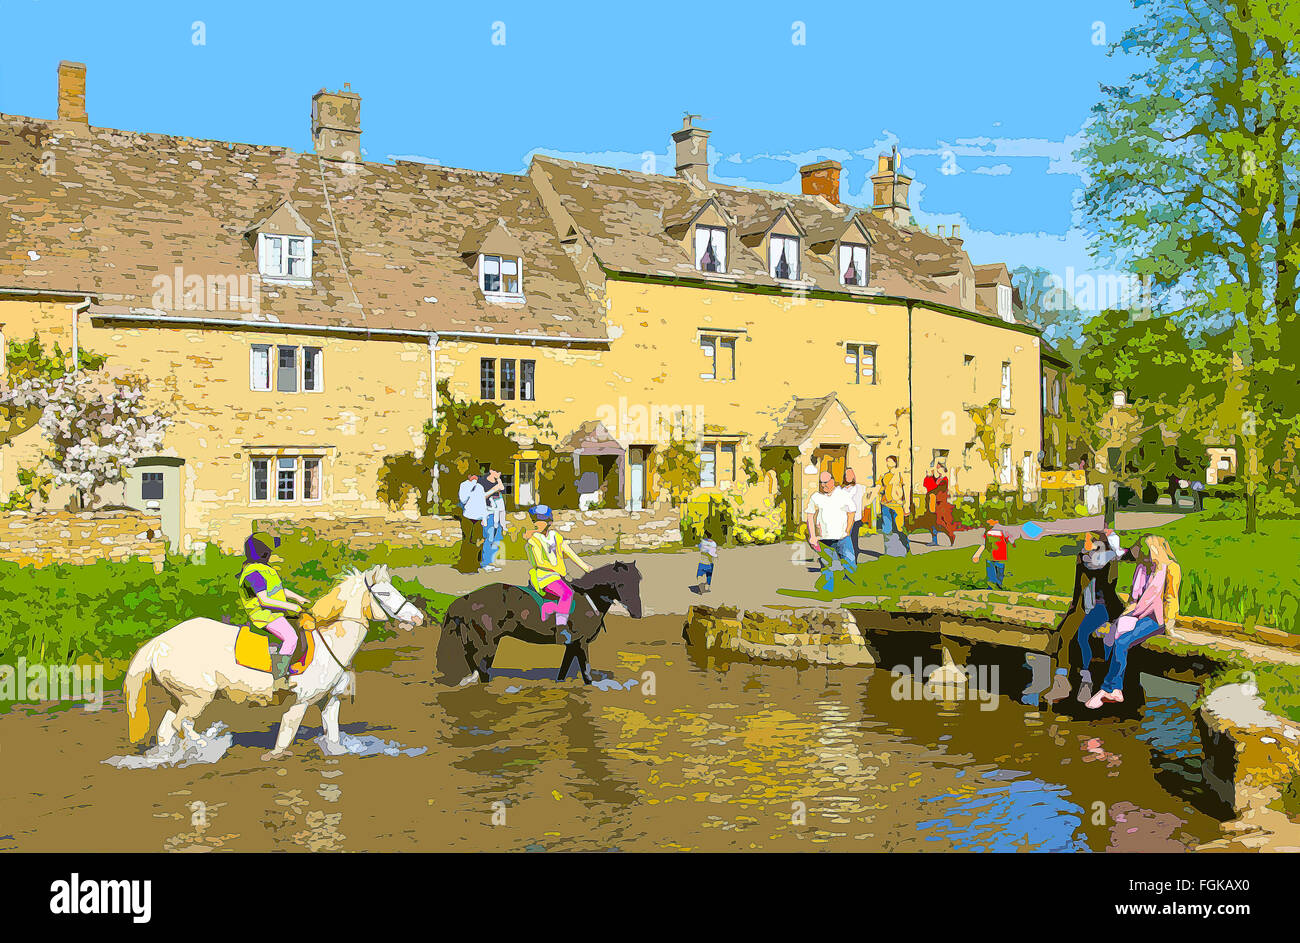 Ein Plakat Stil Illustration aus einem Foto von Cotswold Dorf Lower Slaughter, Gloucestershire, England, UK Stockfoto